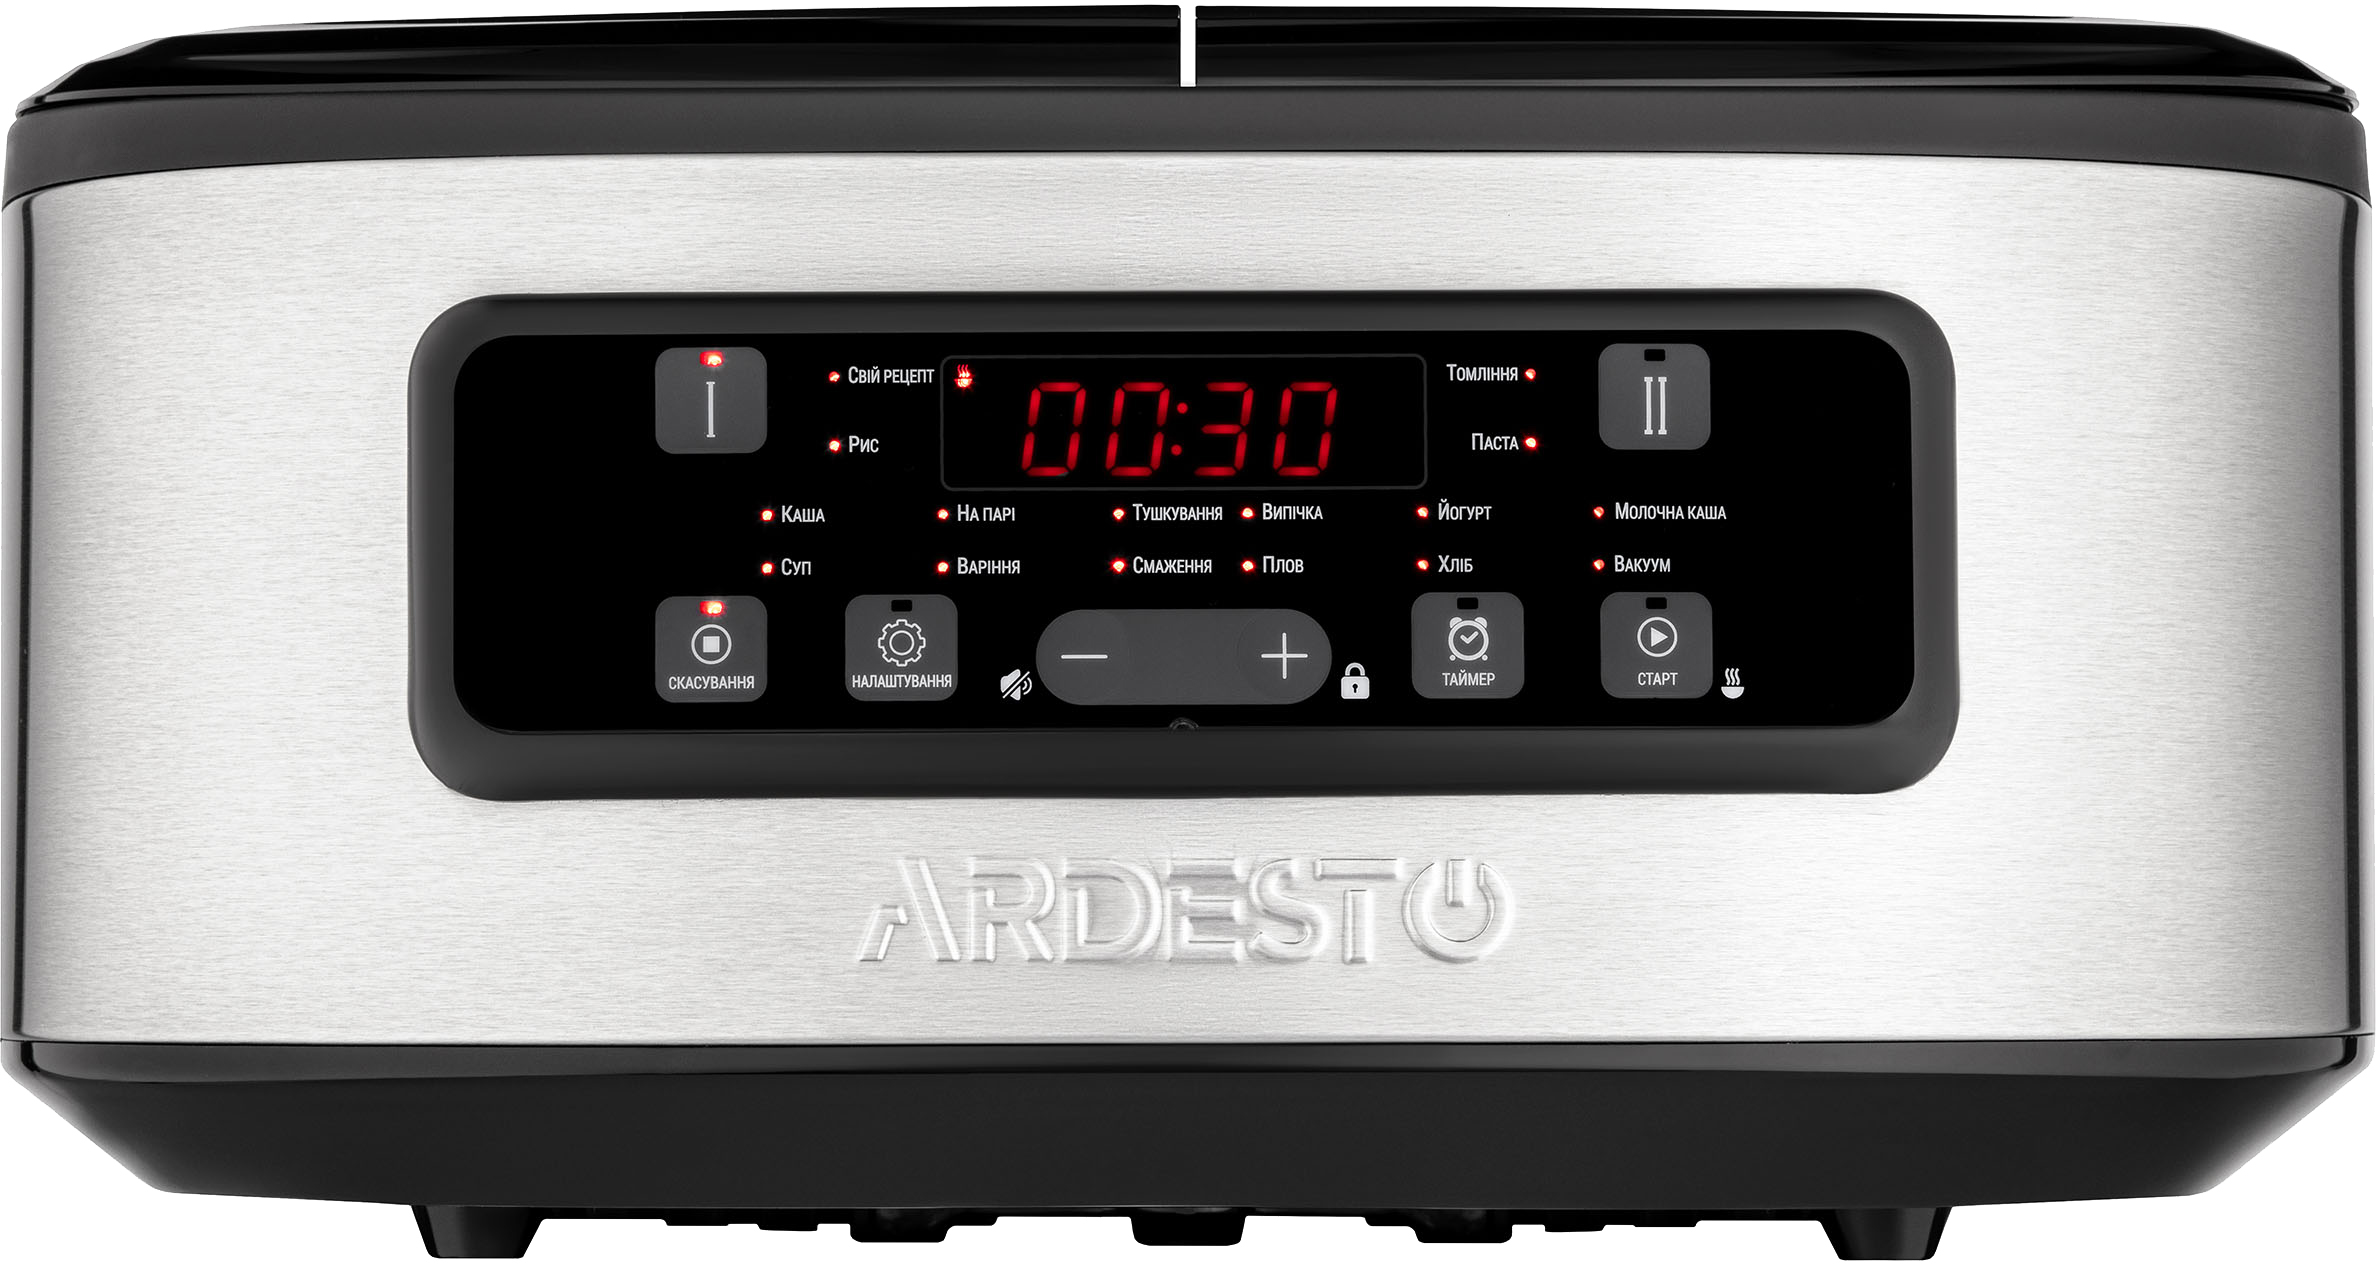 Цена мультиварка Ardesto DMC-SA1212SB в Киеве